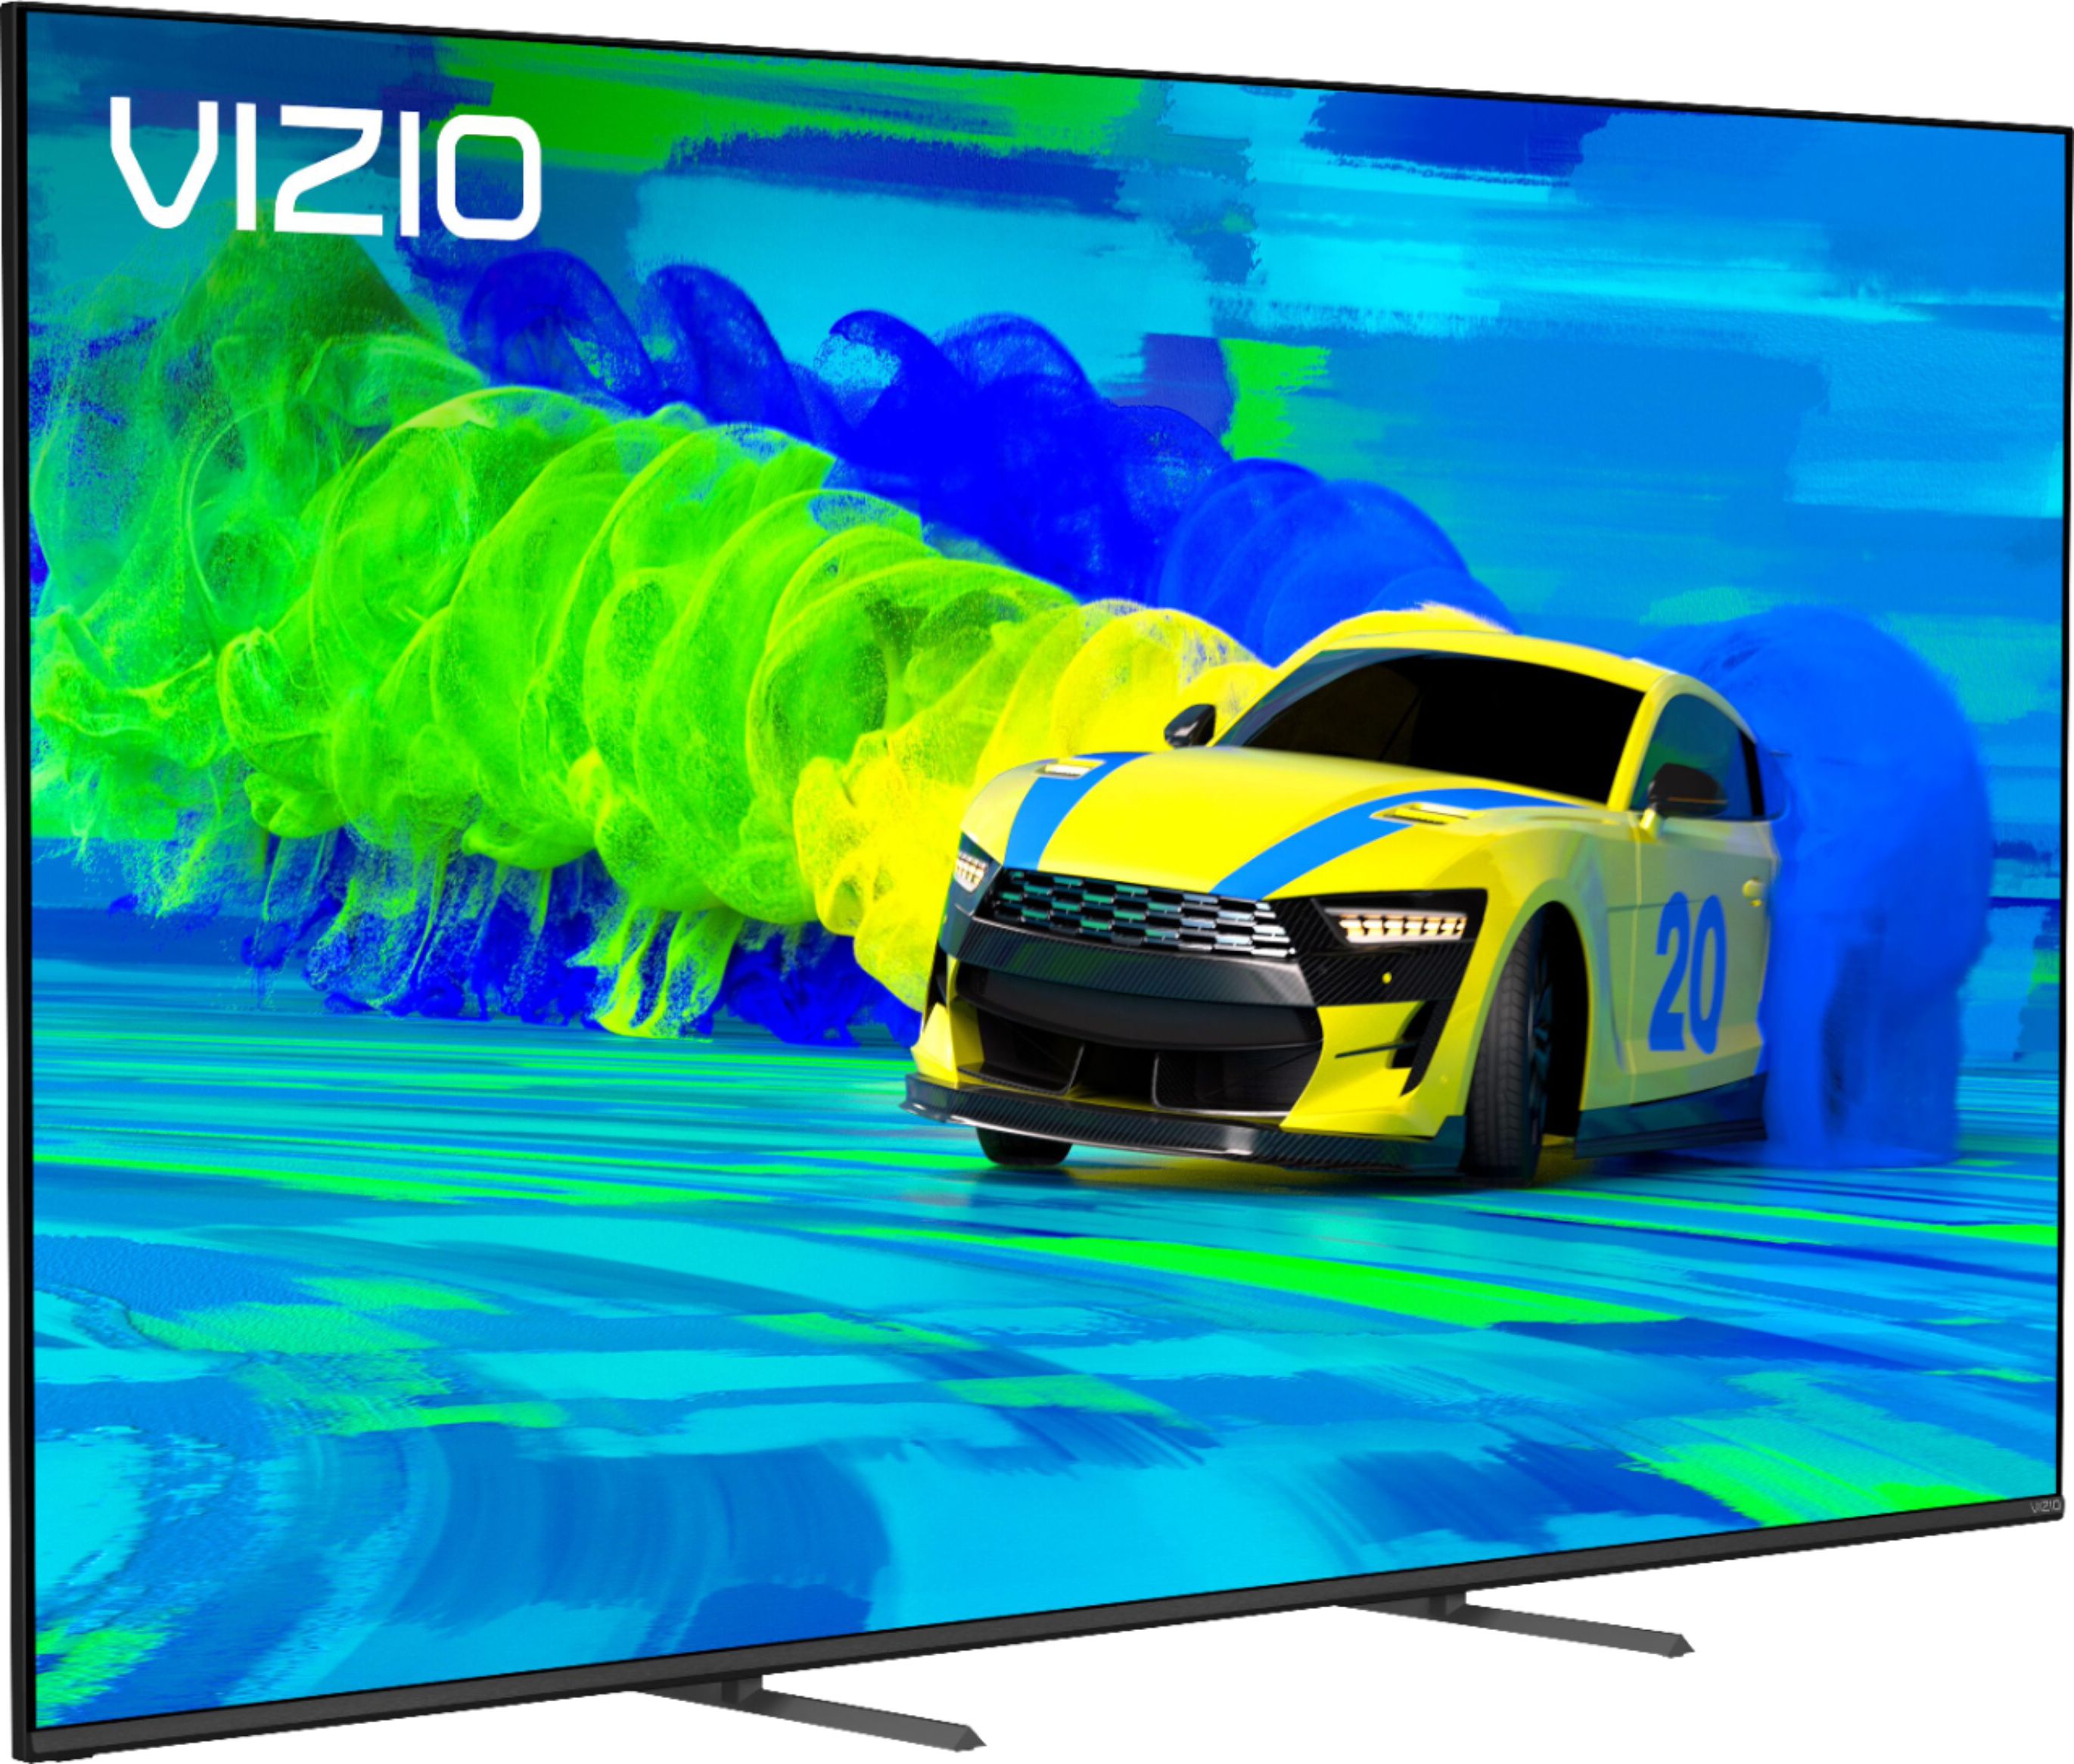 Vizio 70" M-Series (M70Q7) Quantum UHD HDR 4K TV @ Amazon $798